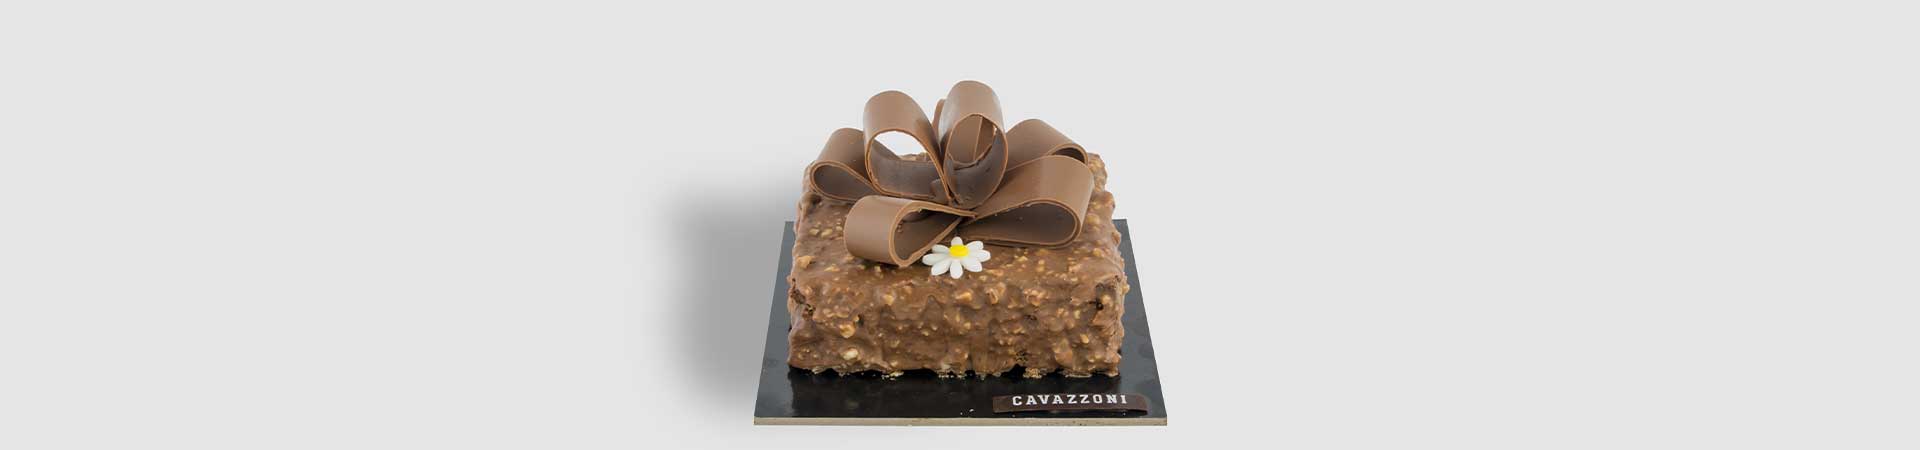 Torta Rocher - Pasticceria Cavazzoni Fano